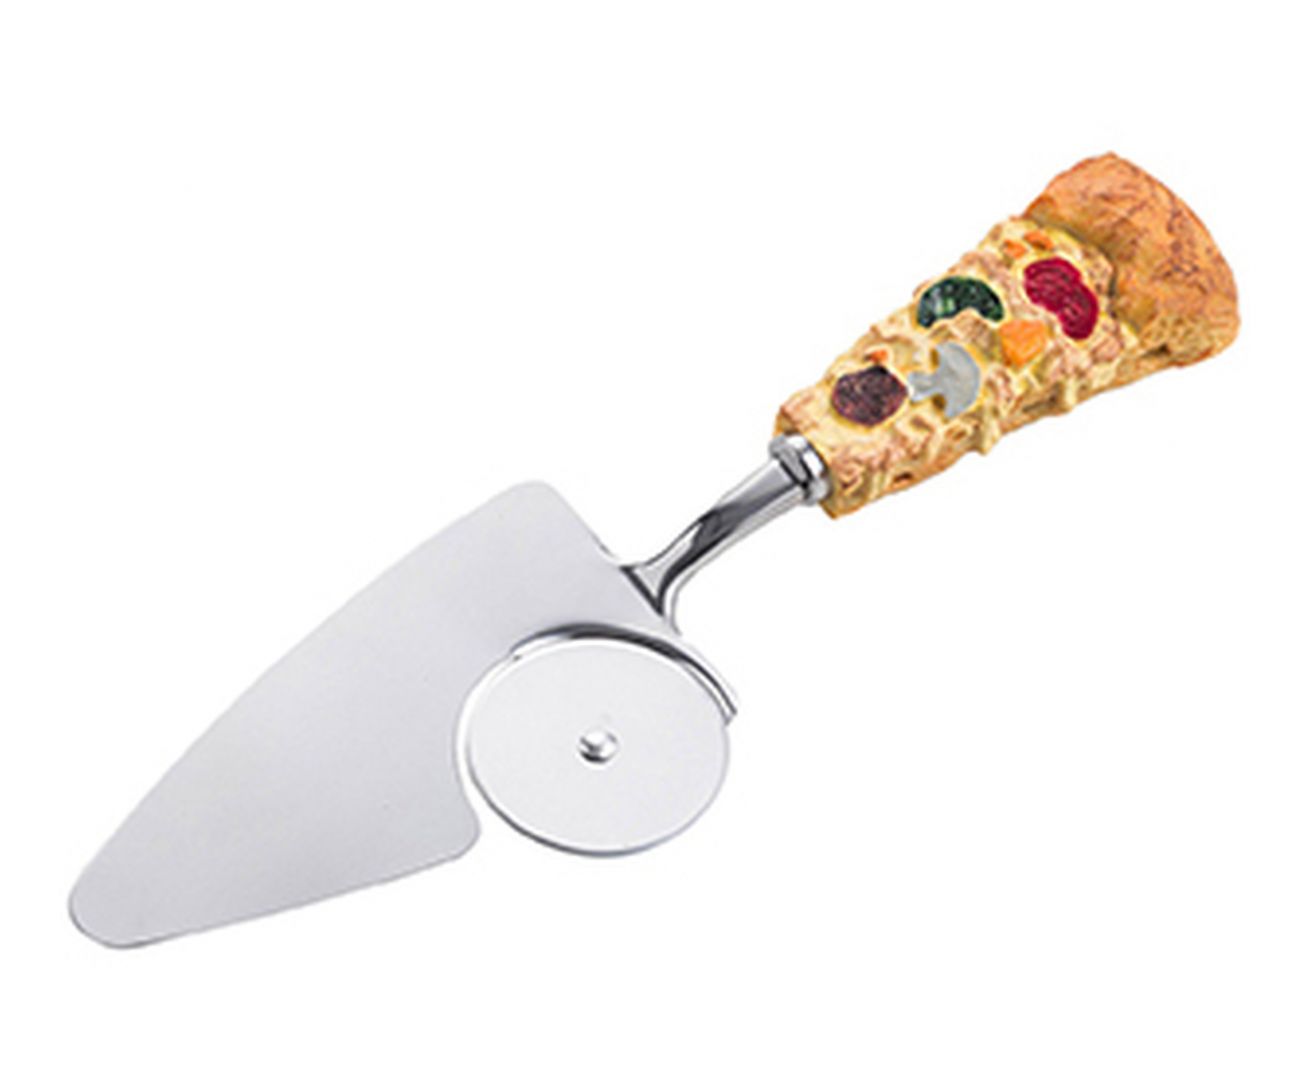 Nóż do pizzy Italy, 49 zł, www.westwing.pl